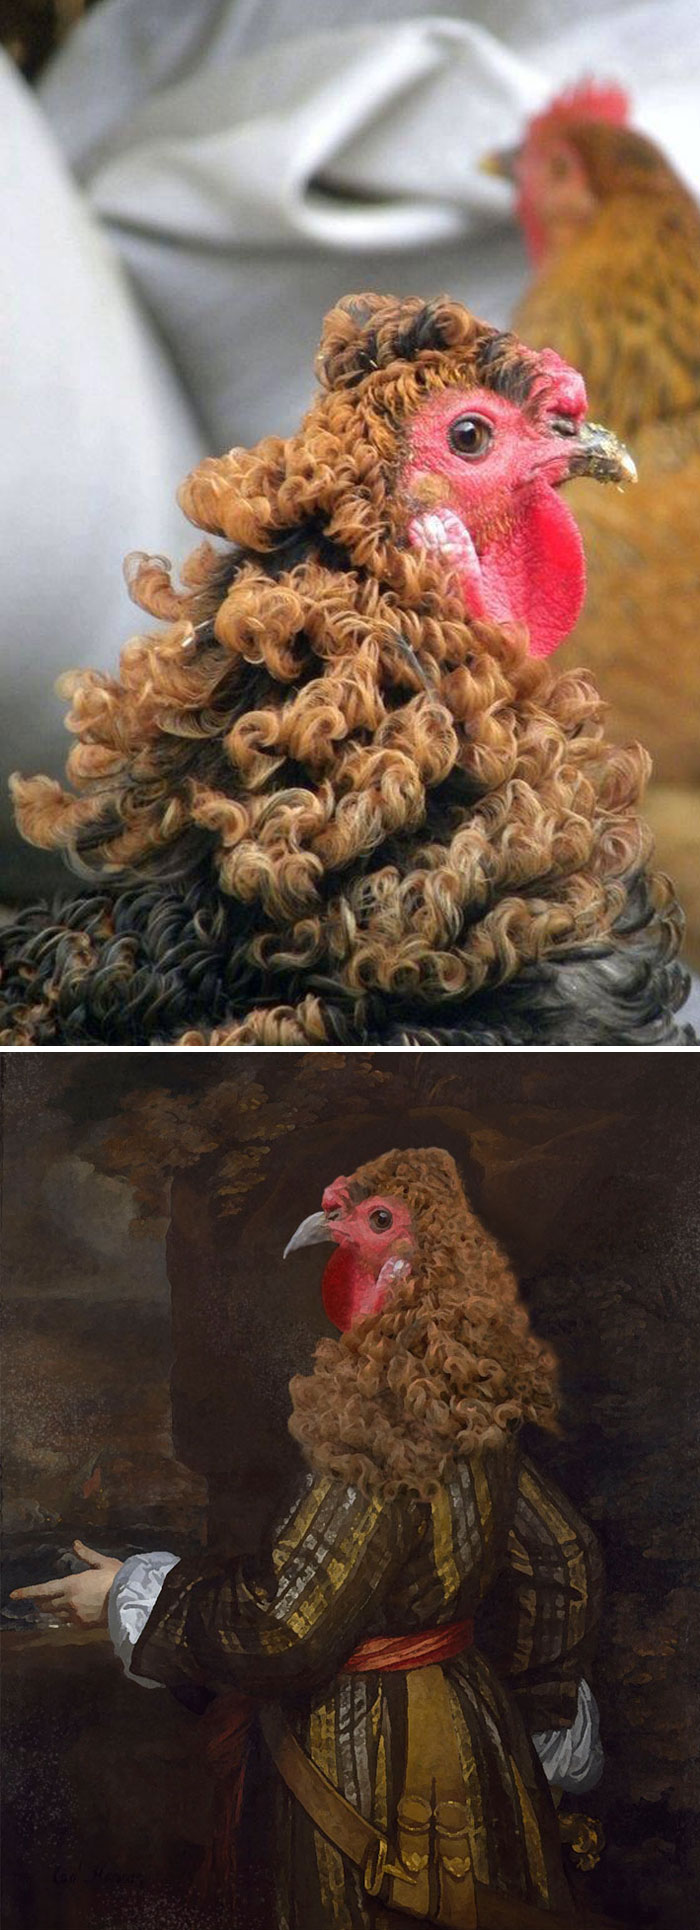 Bộ lông xoăn của chú gà hoàn toàn hợp rơ với hình ảnh các quý tộc ngày xưa.